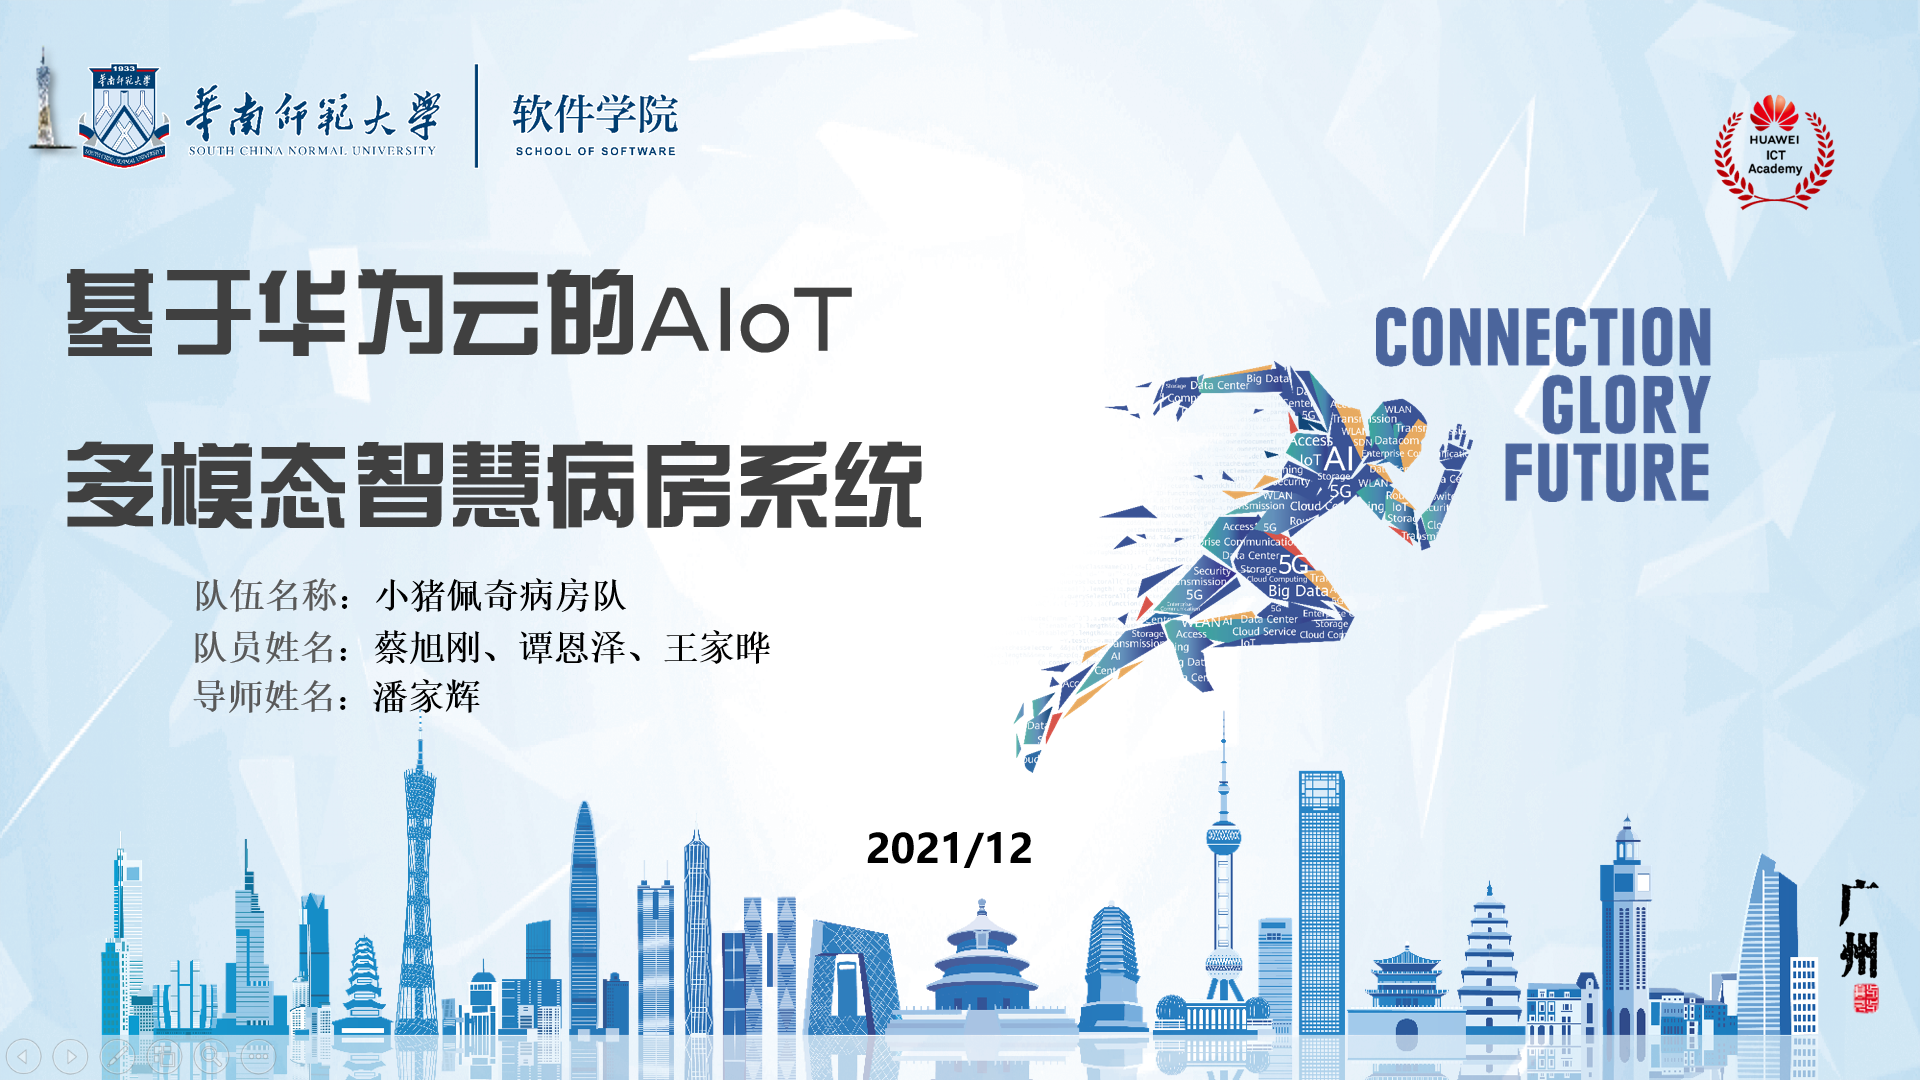 20211228 我院脑机交互与混合智能团队成员喜获华为中国大学生ICT大赛2021总决赛全国一等奖2.png